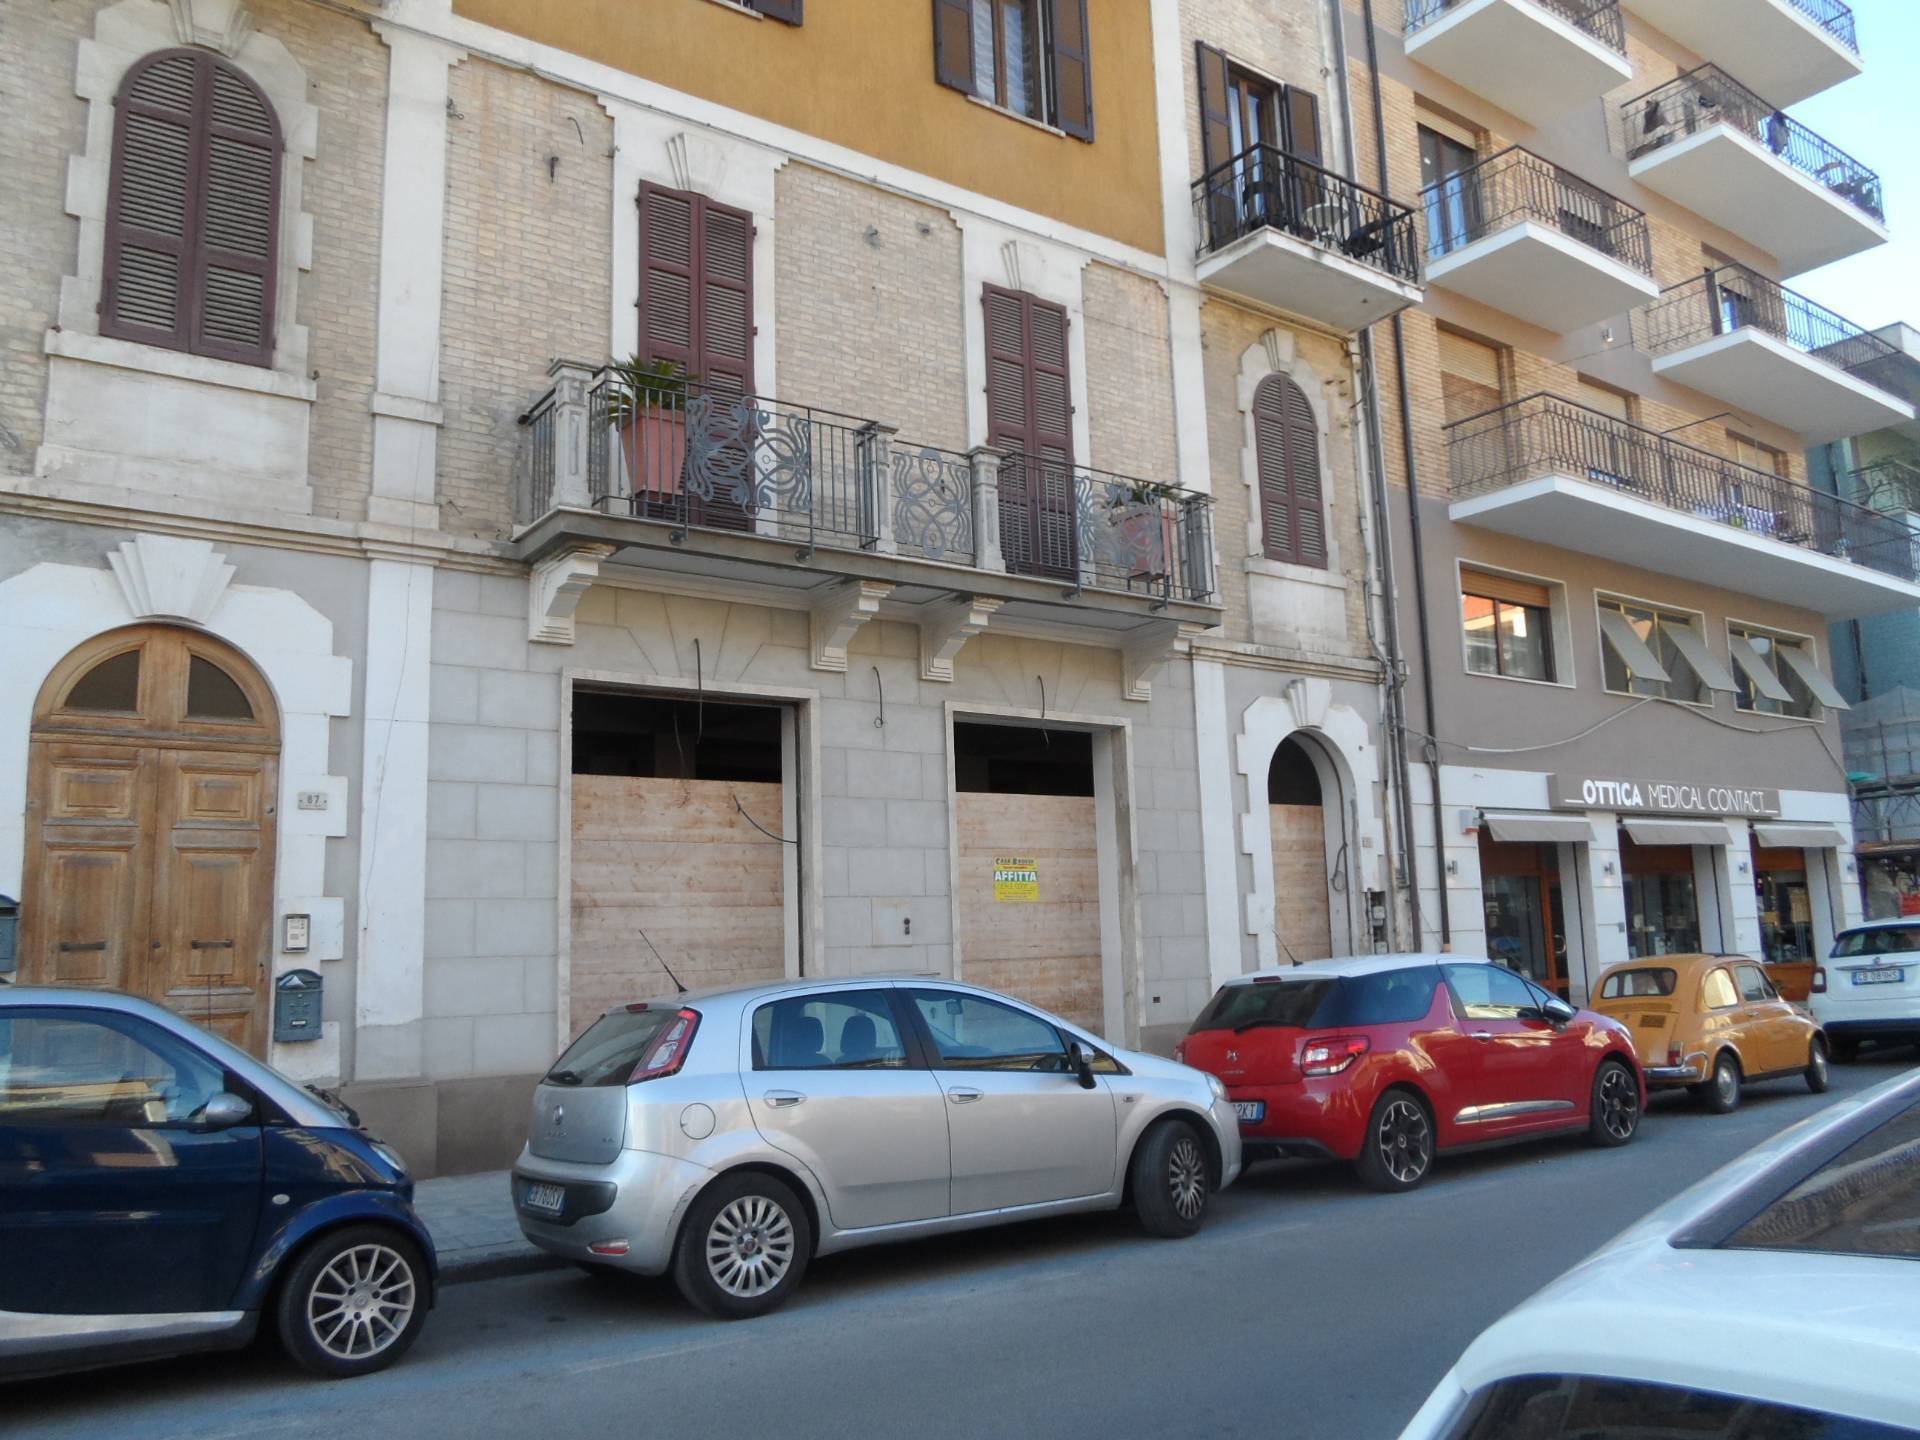 Locale commerciale in affitto, San Benedetto del Tronto centro